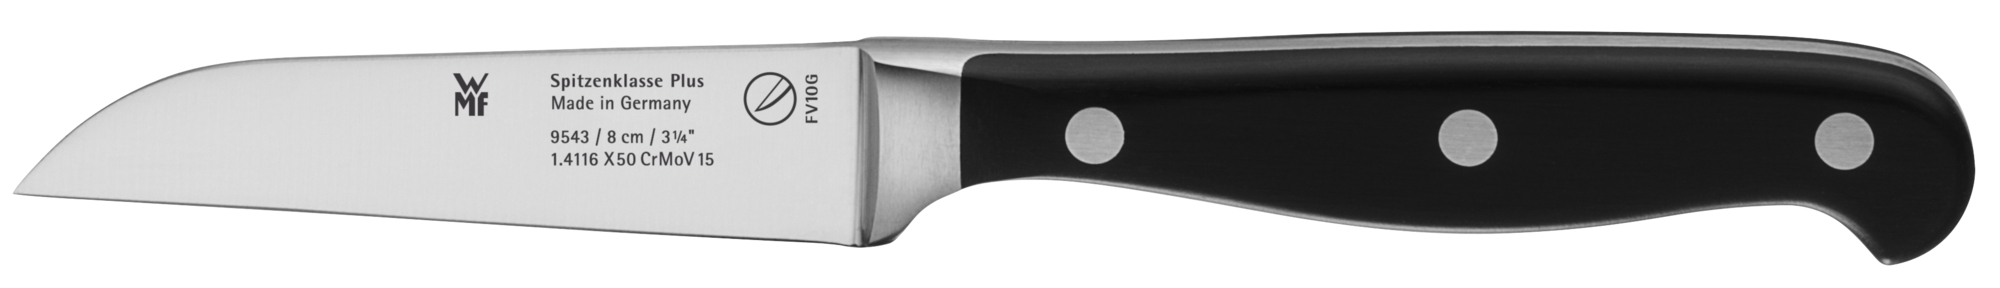 нож для стейков wmf spitzenklasse plus 12 см 1895466032 Spitzenklasse Plus 8 см